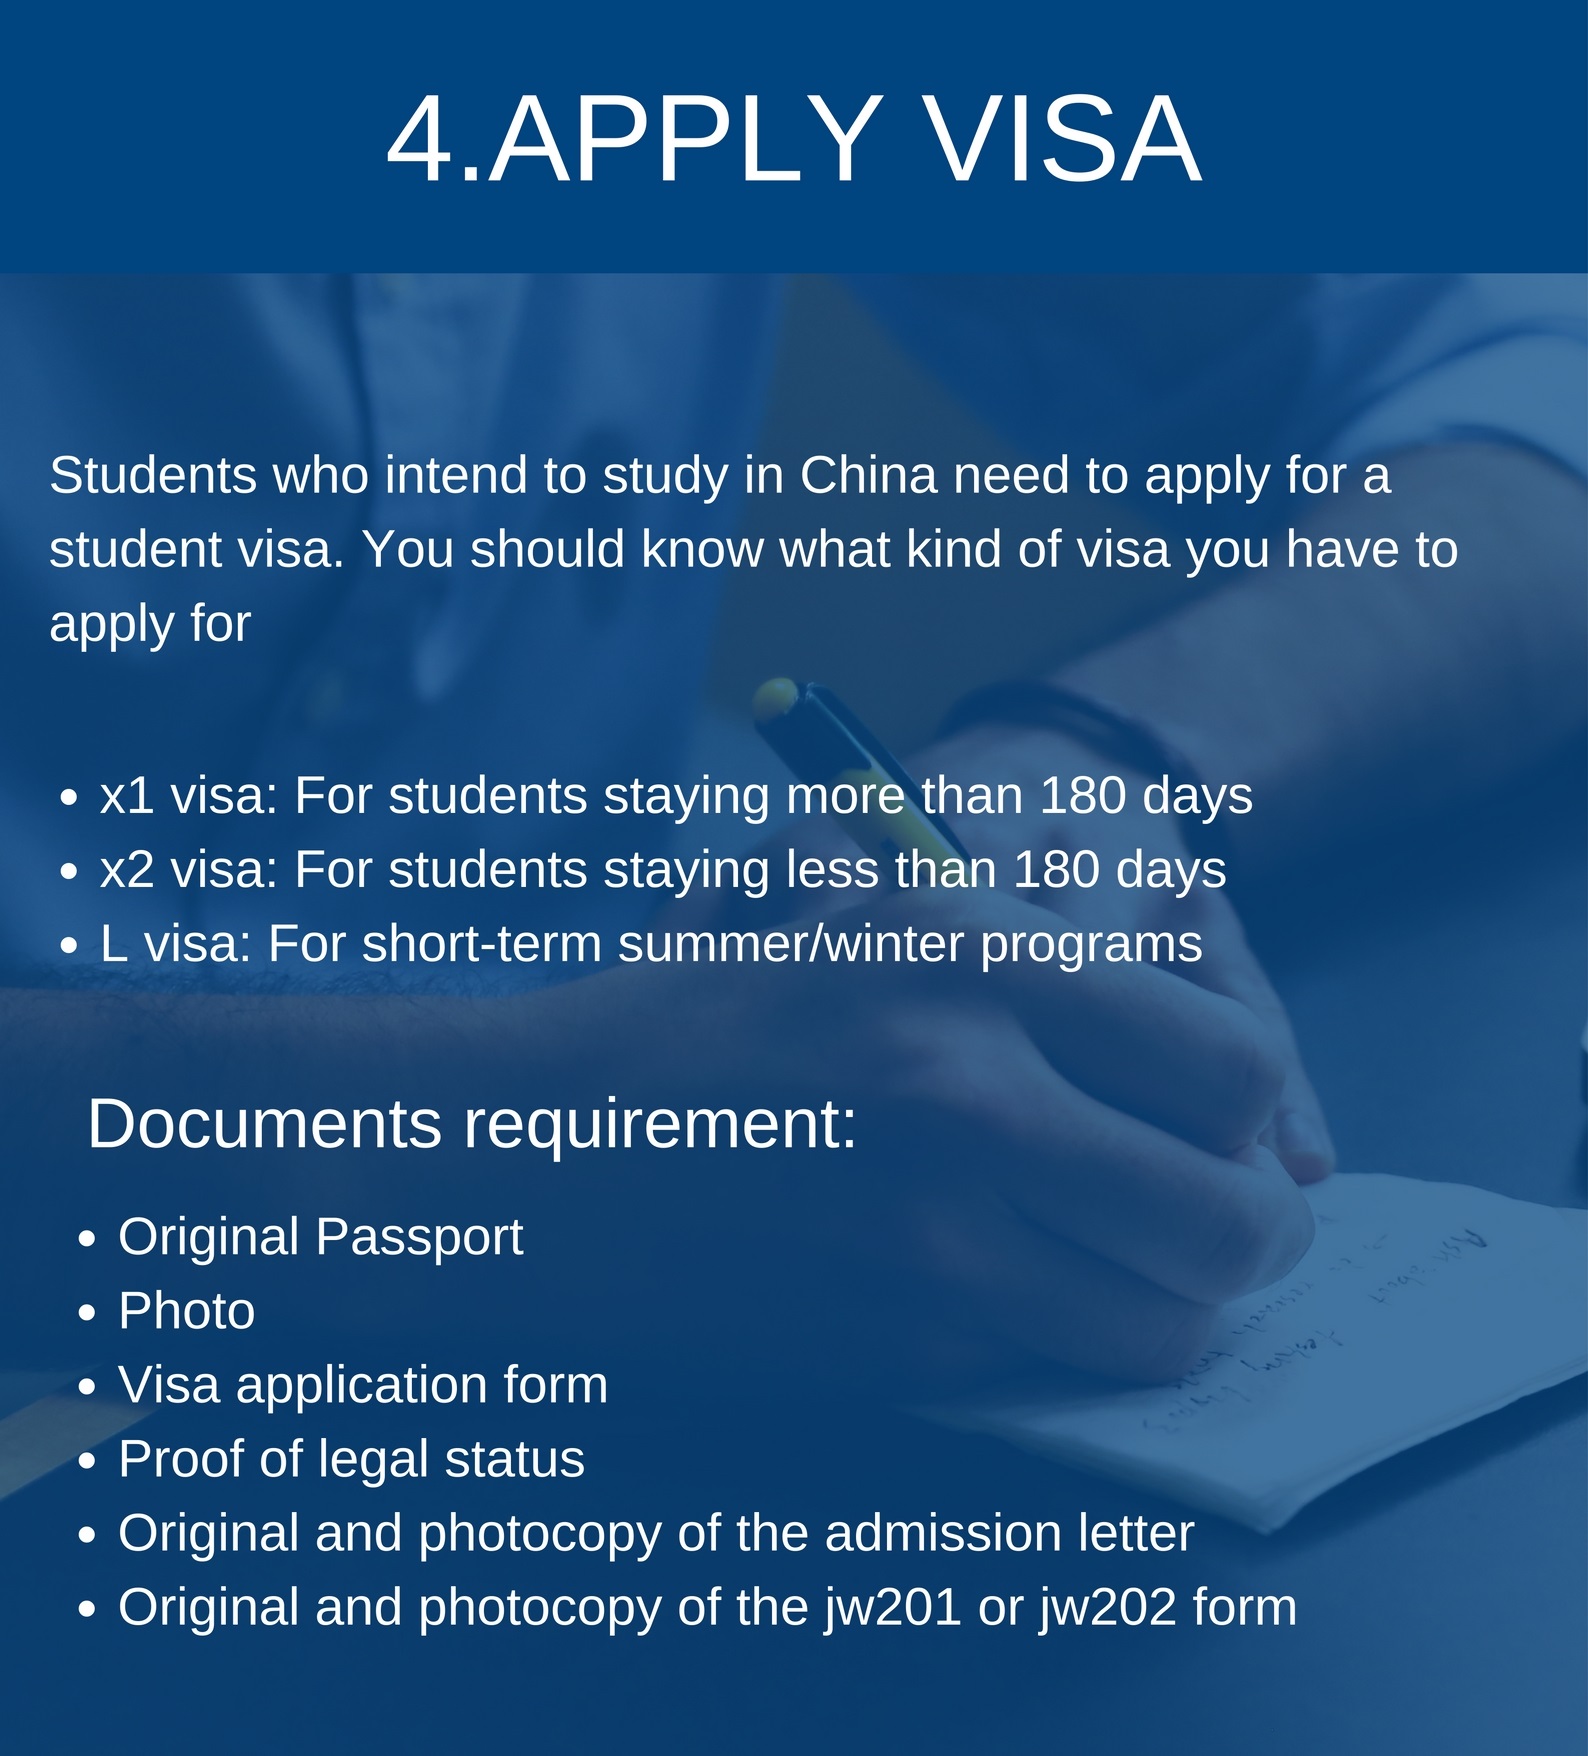 4.apply visa.jpg